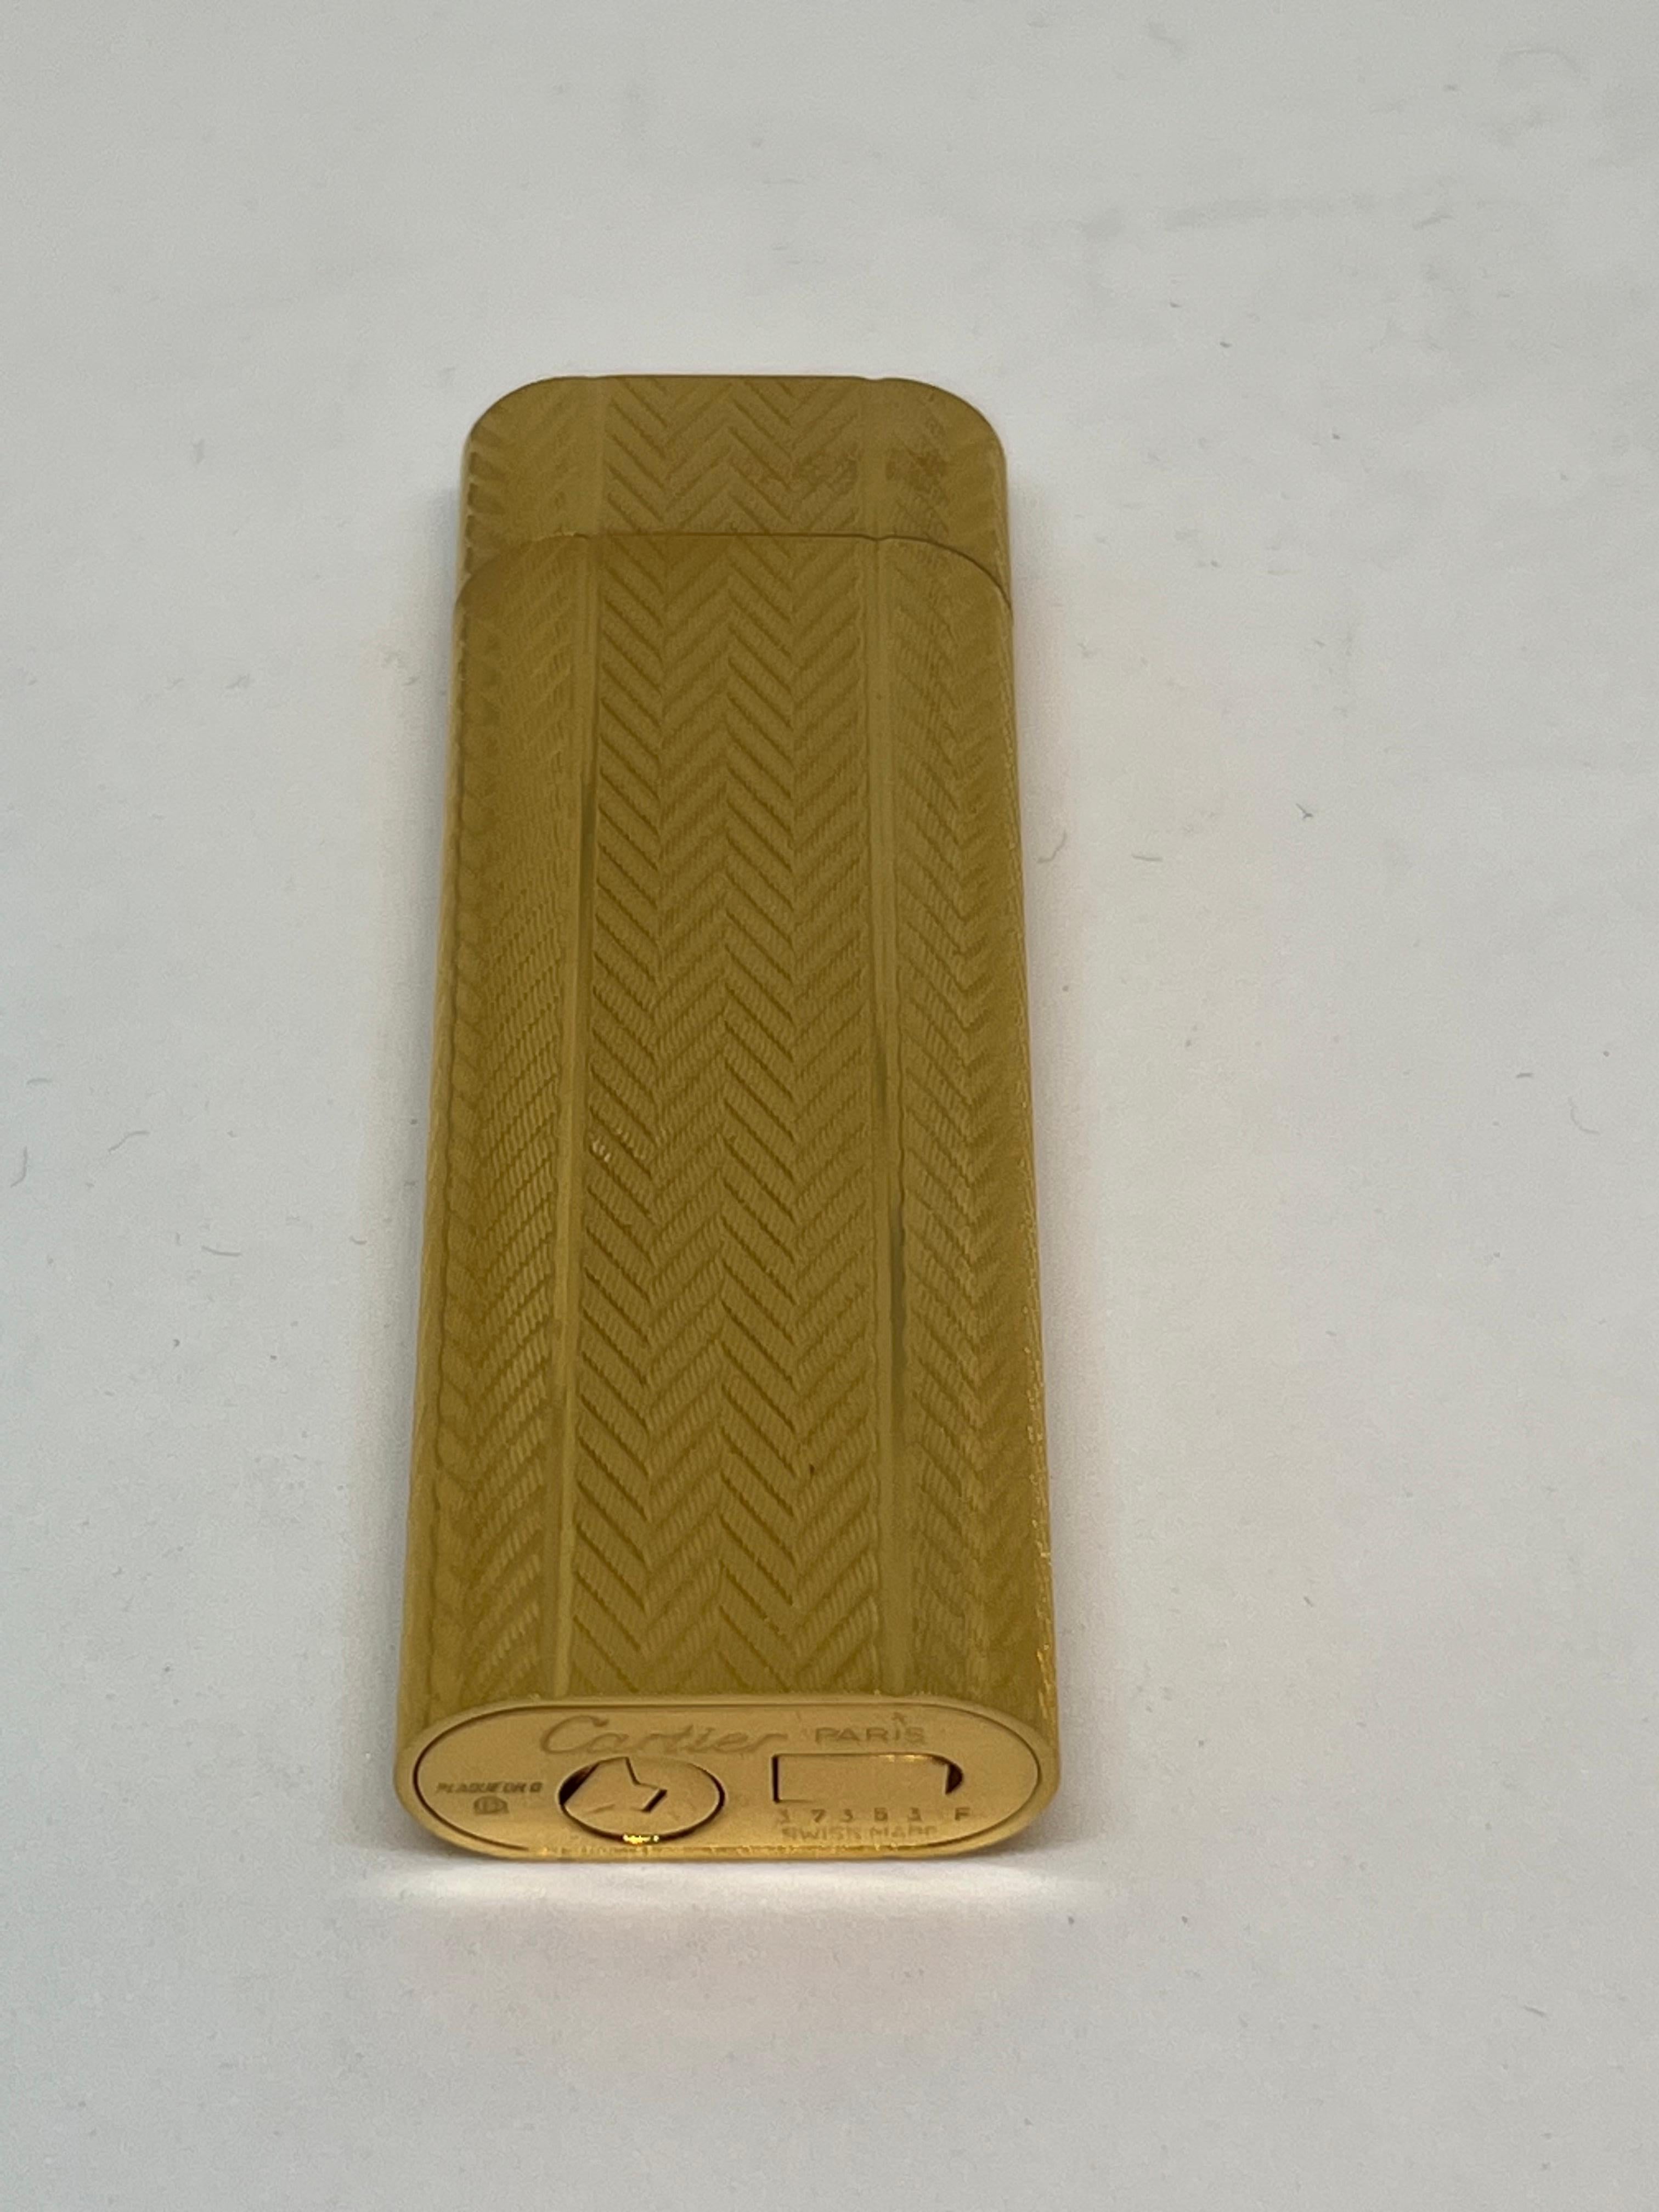 Vintage Les Must de Cartier Paris 18k Gold Plated Lighter, Circa 1980s For Sale 11